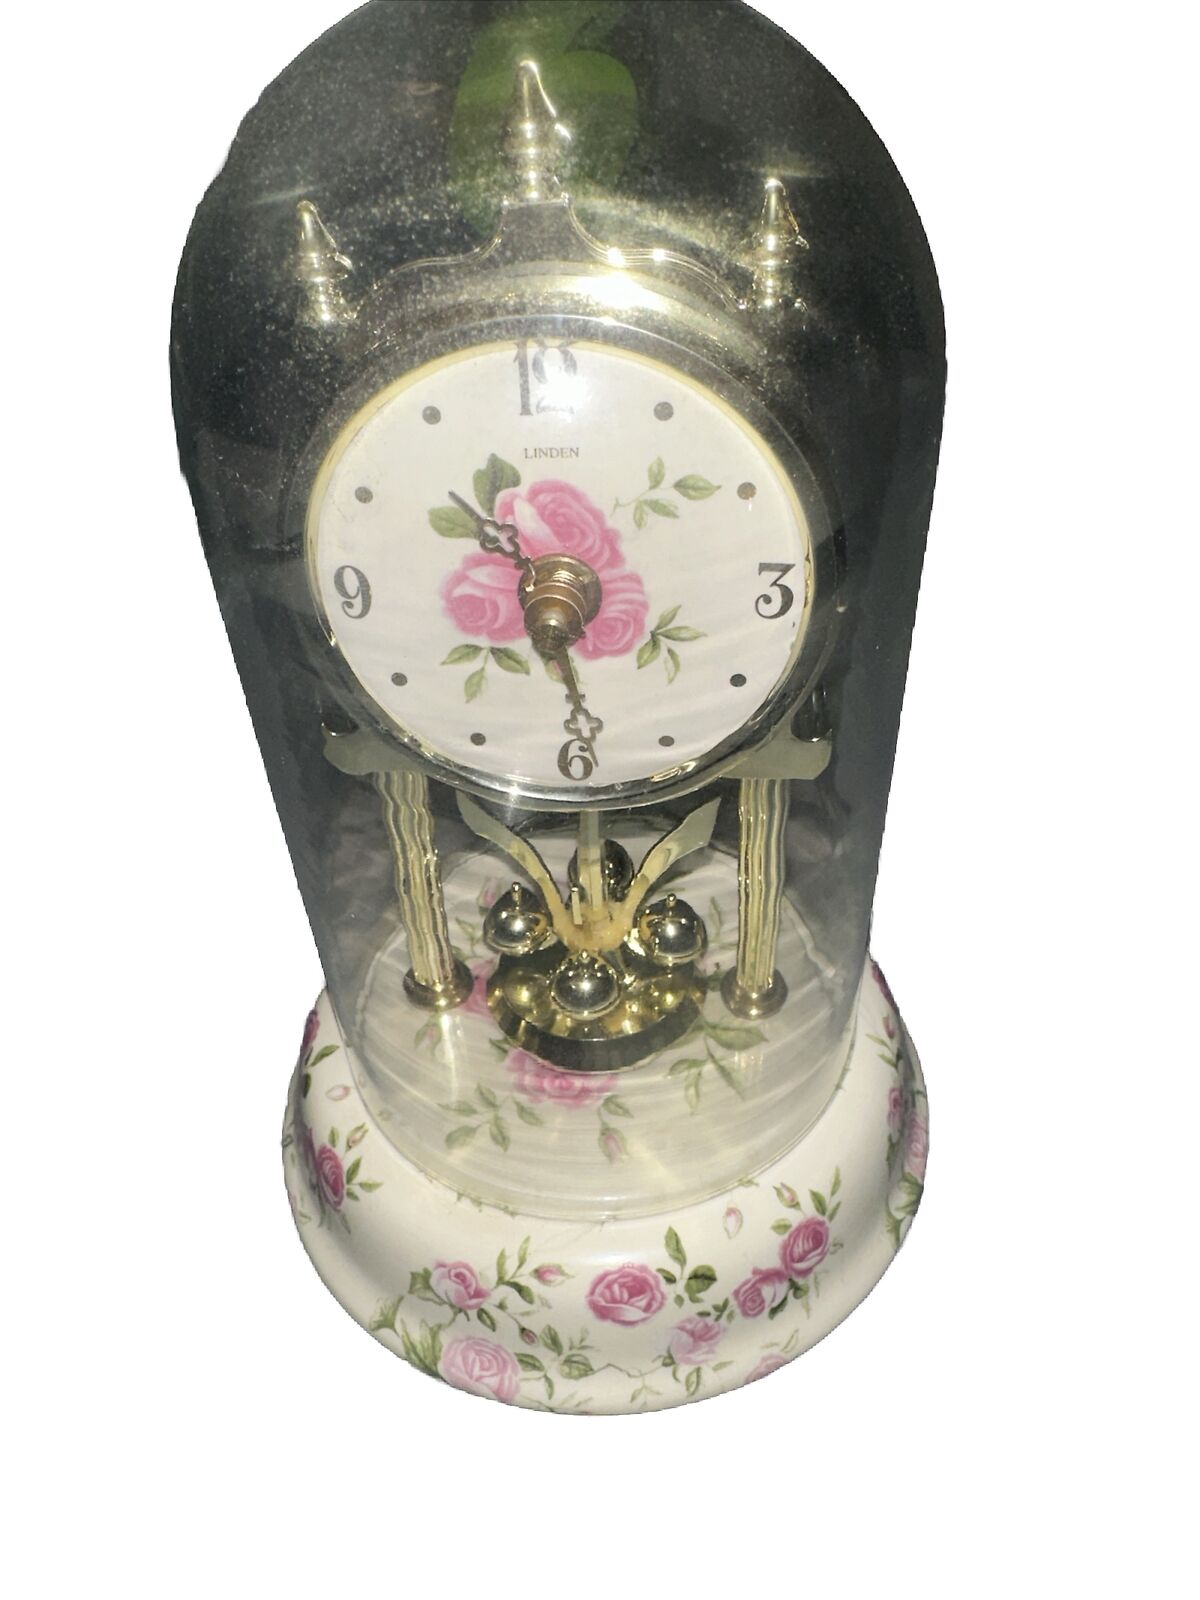 Linden Clock Floral Vintage Ceramic Floral & Gold Clock Work Battery Operated